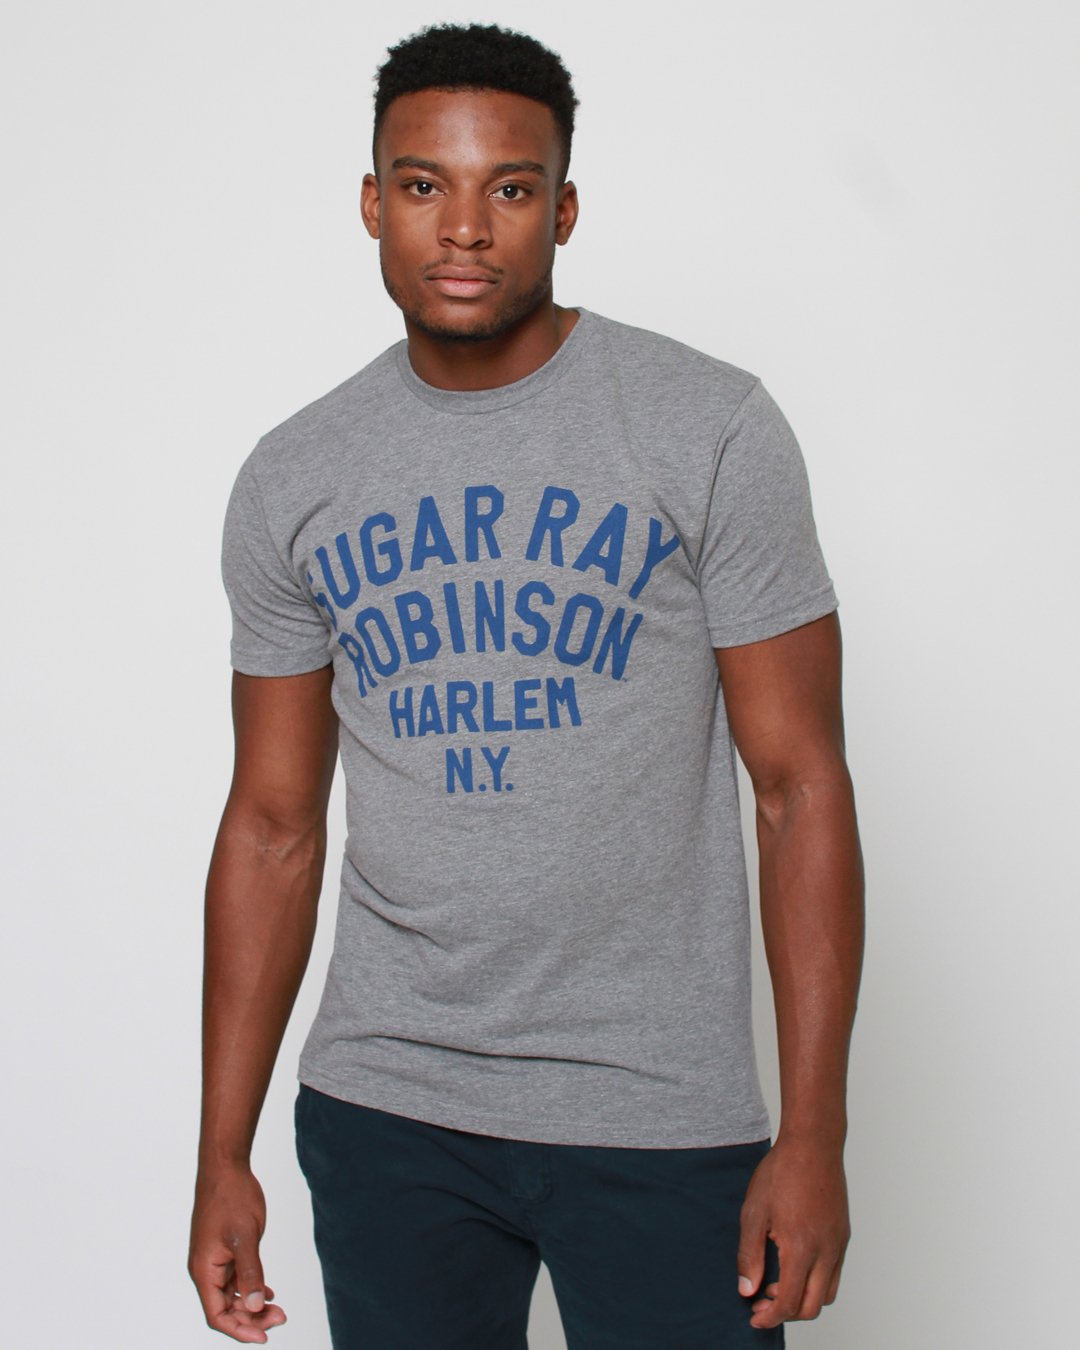 sugar ray robinson t shirt